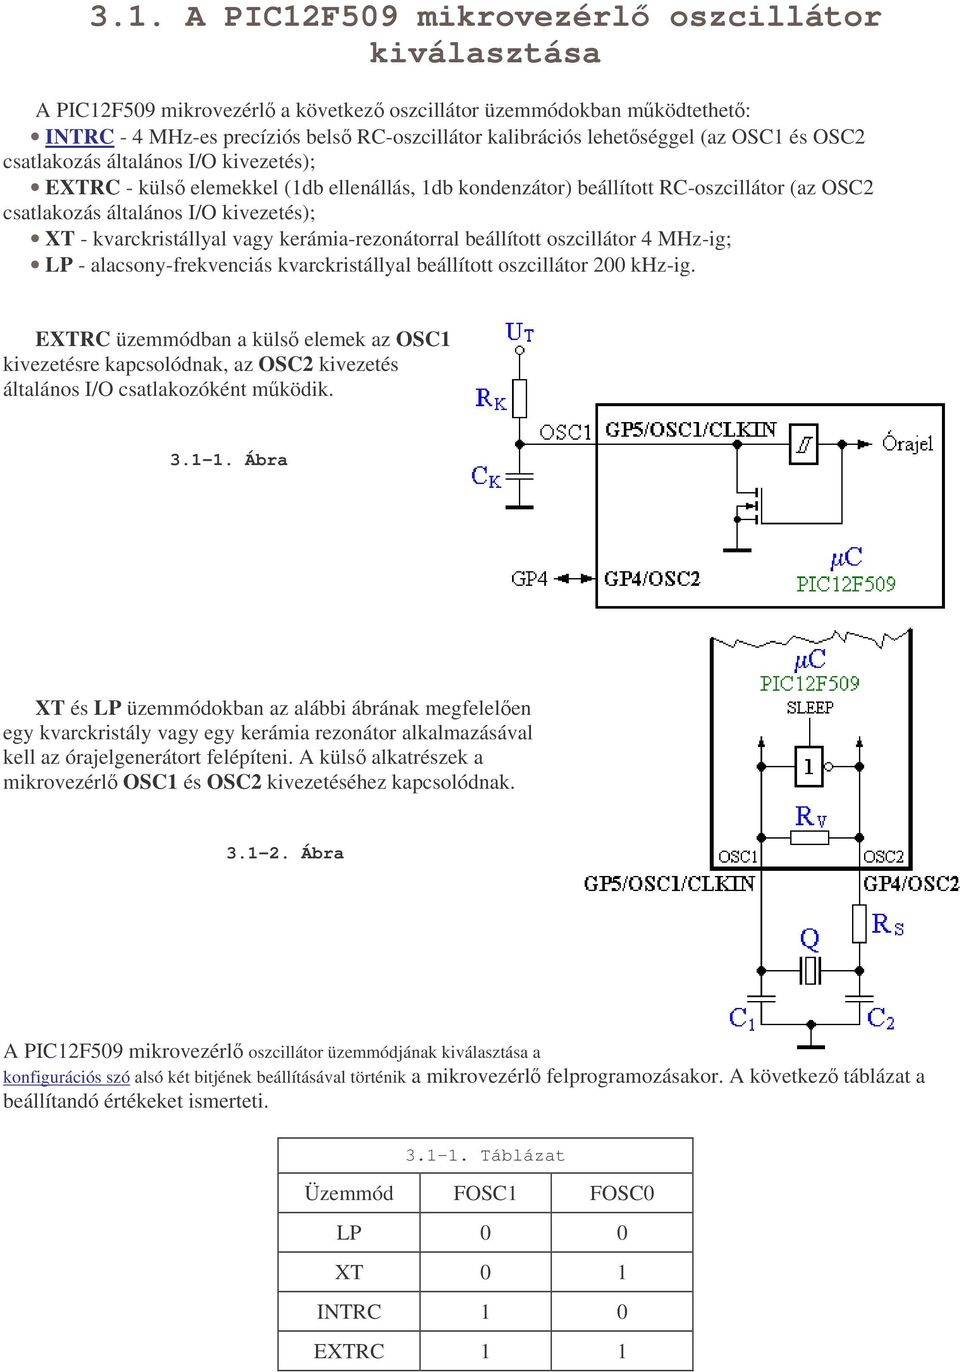 kvarckristállyal vagy kerámia-rezonátorral beállított oszcillátor 4 MHz-ig; LP - alacsony-frekvenciás kvarckristállyal beállított oszcillátor 200 khz-ig.